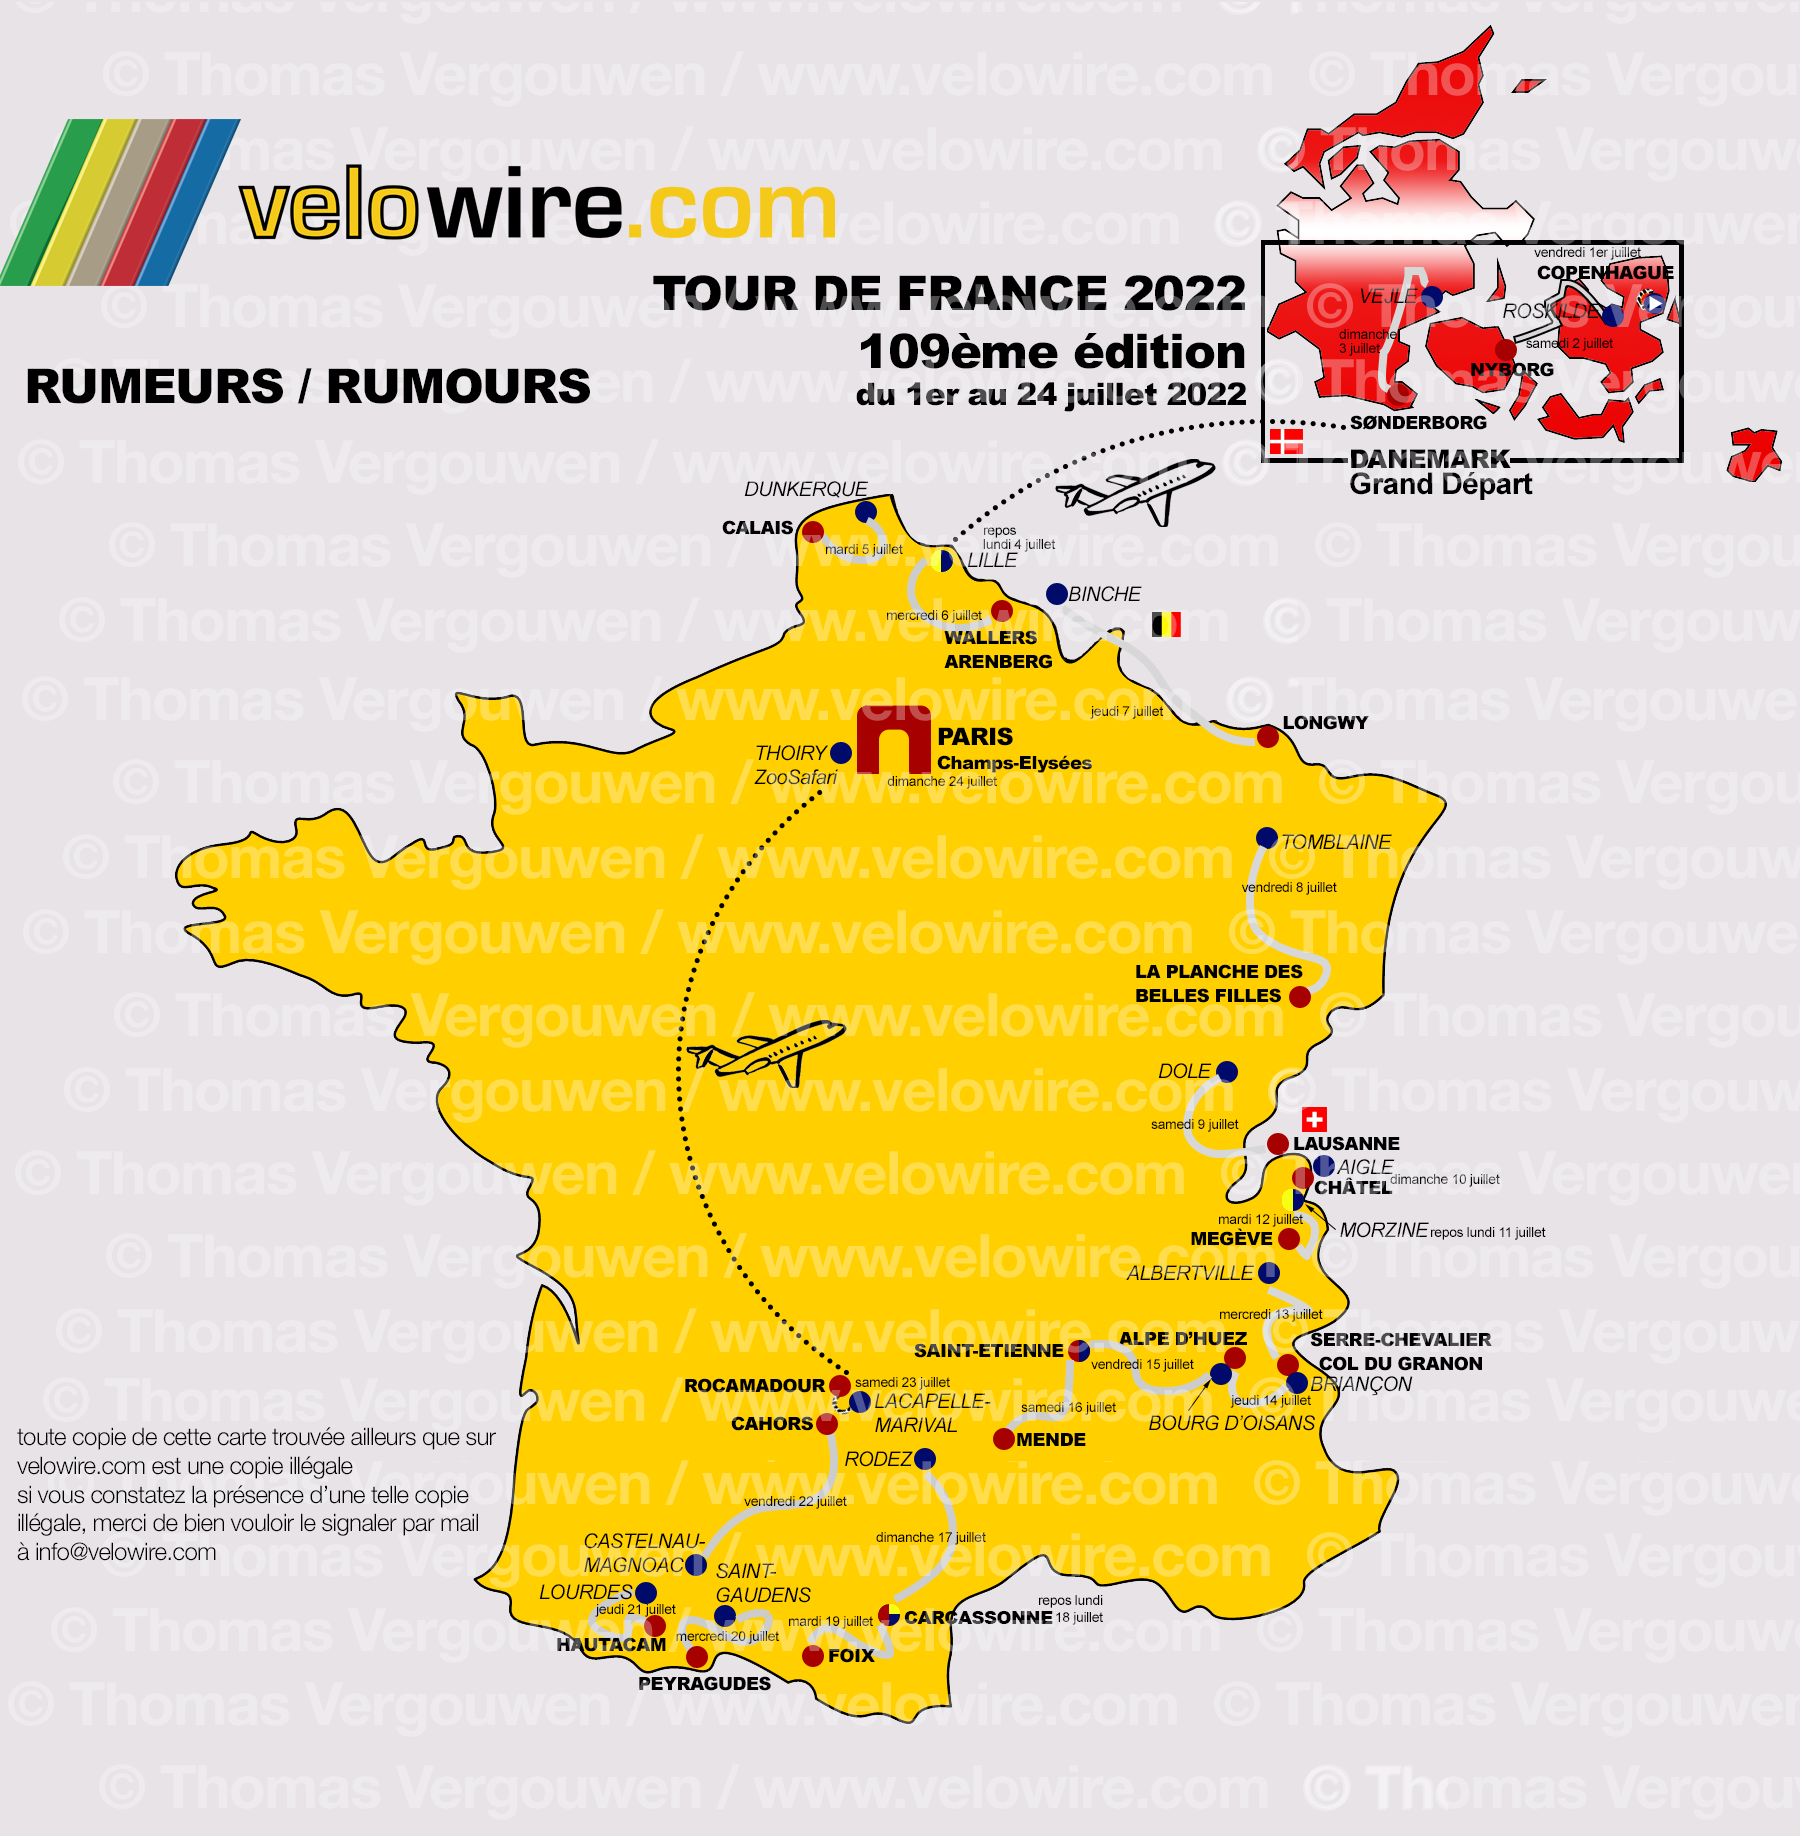 Tour de France 2022 les rumeurs sur le parcours et les villes étapes